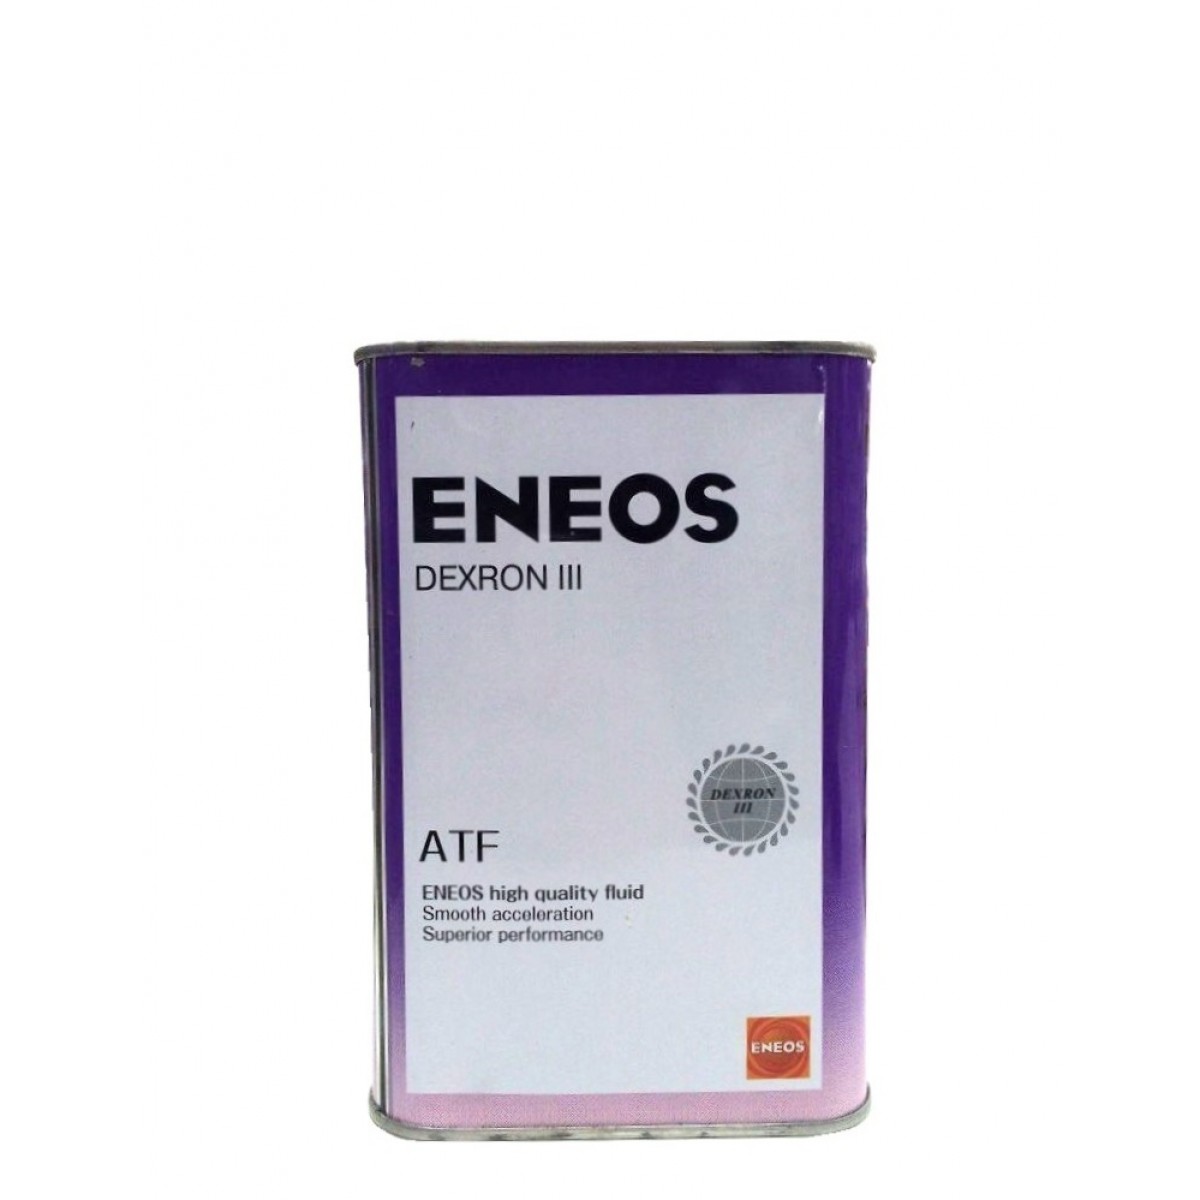 Atf dextron 3. ENEOS ATF 3. ENEOS oil1305. ATF Dexron 3 енеос.